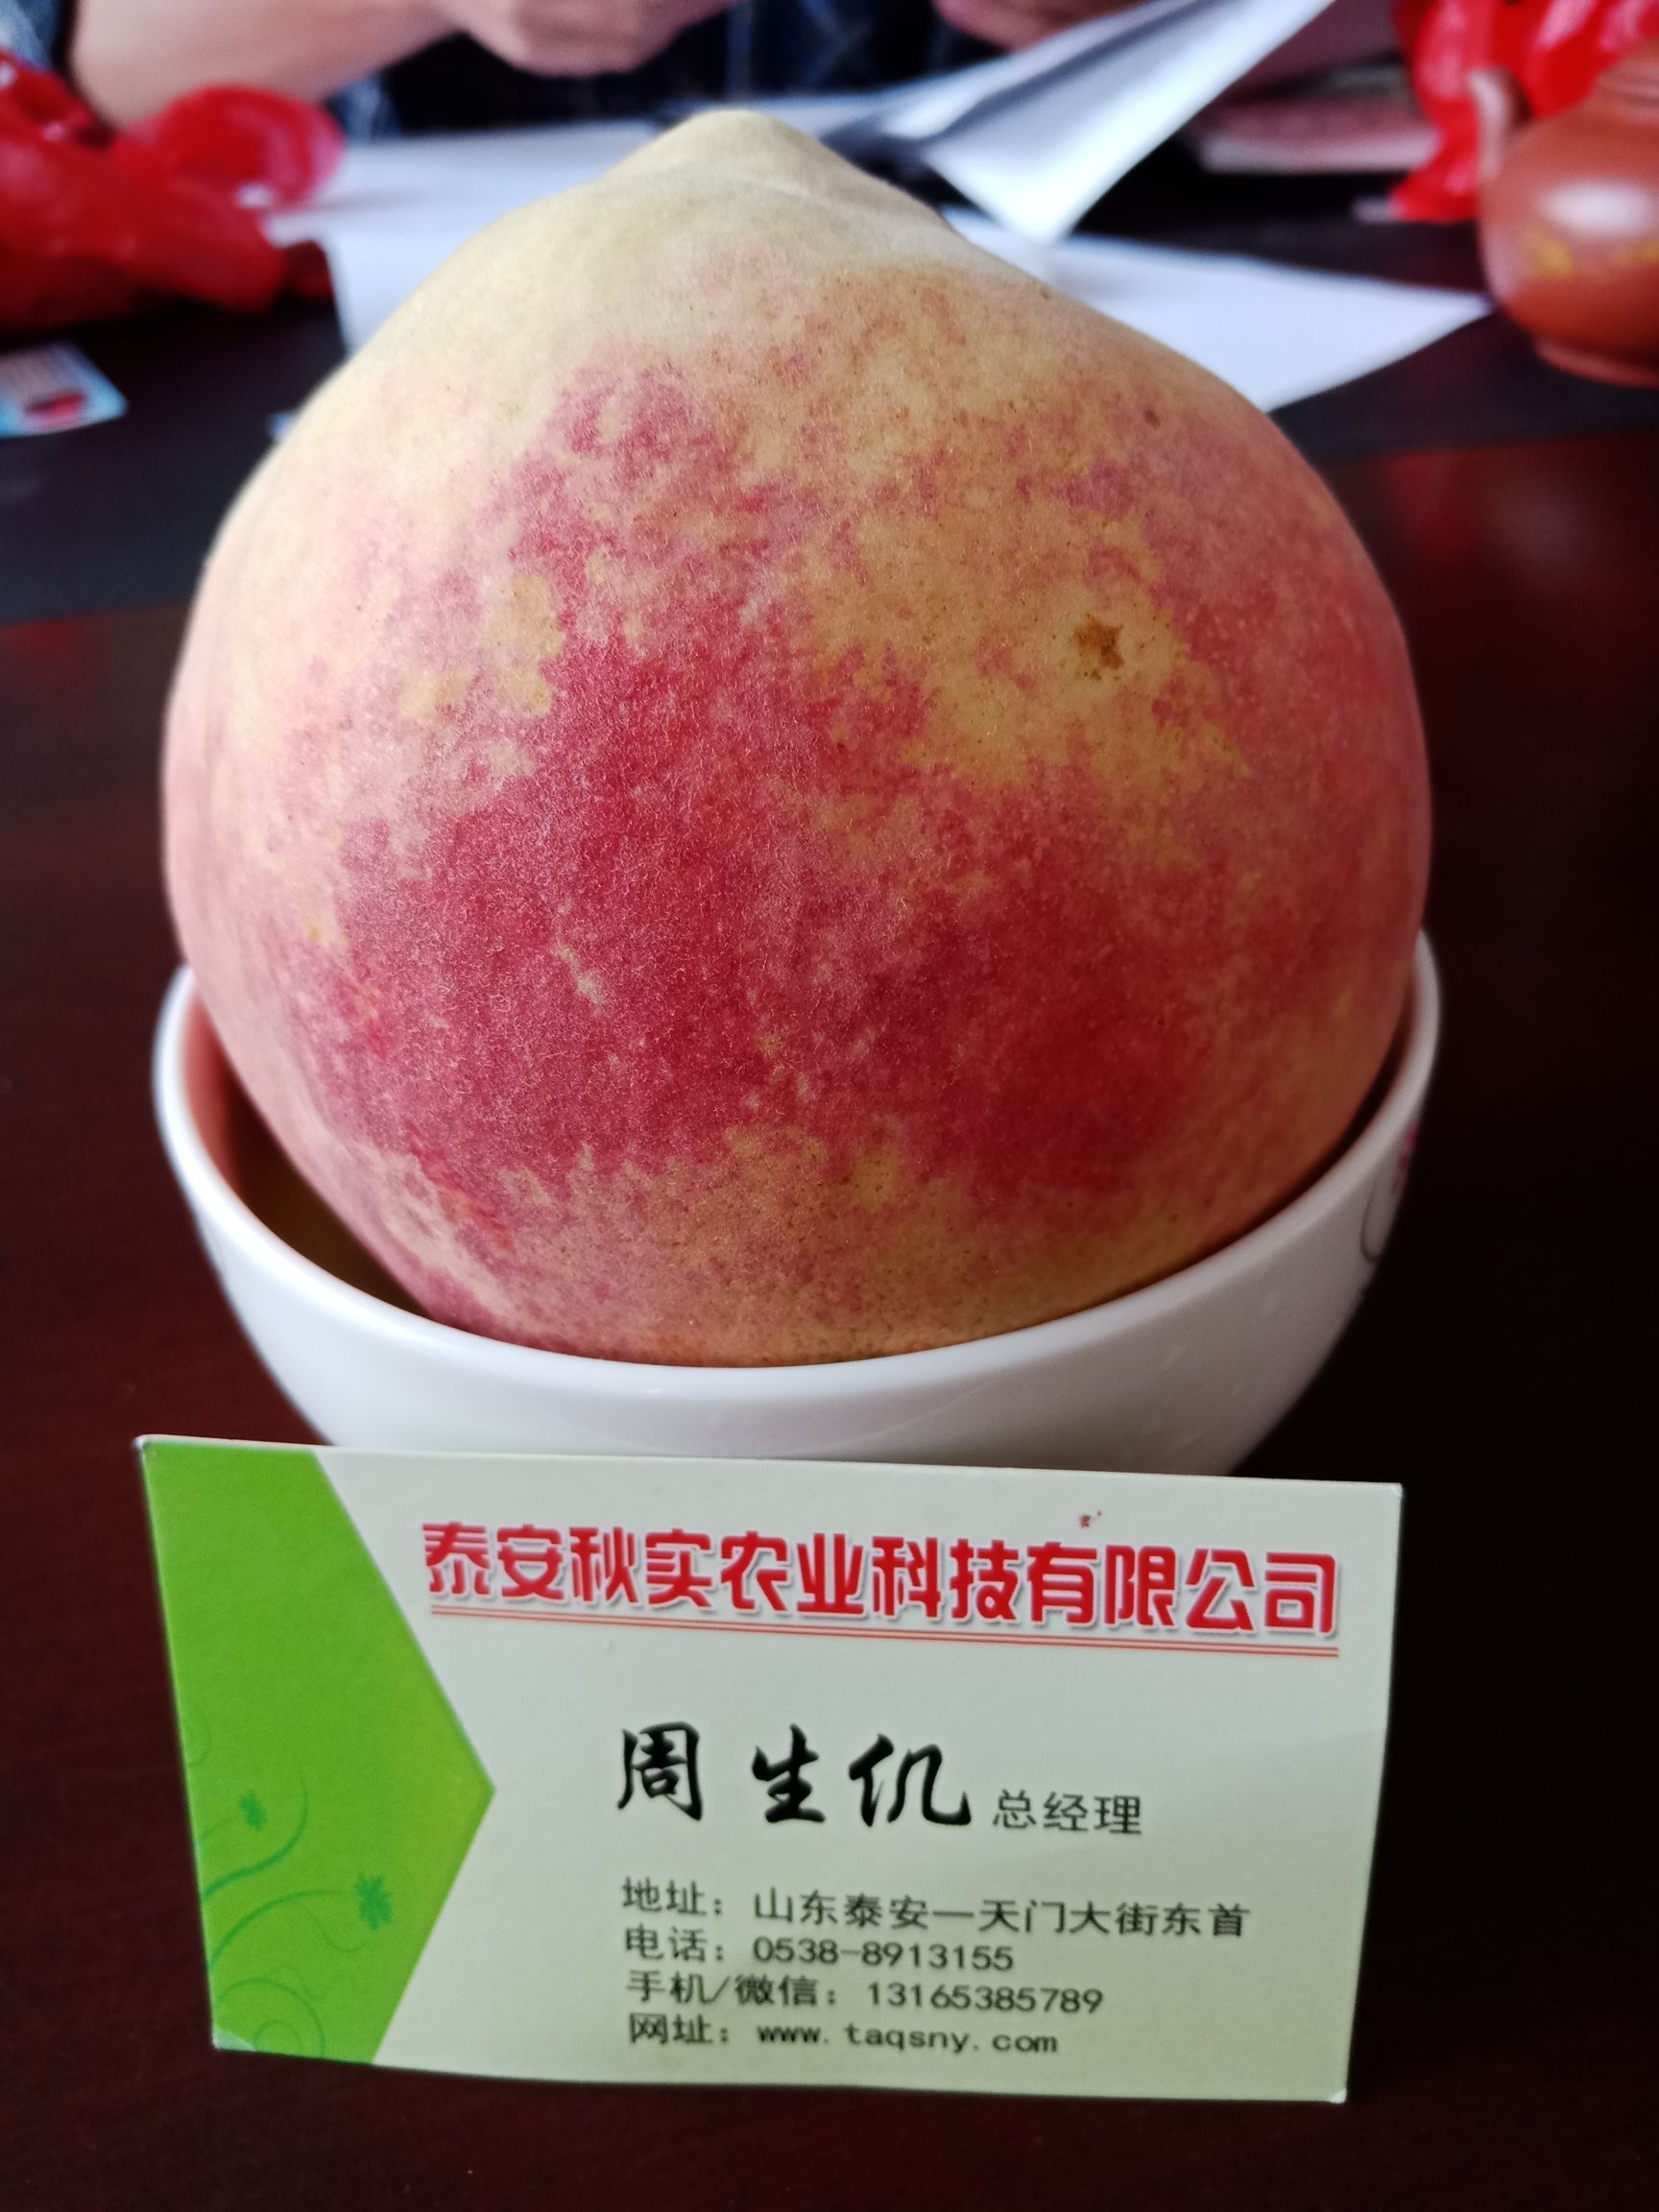 中华寿桃桃树苗 1~1.5米